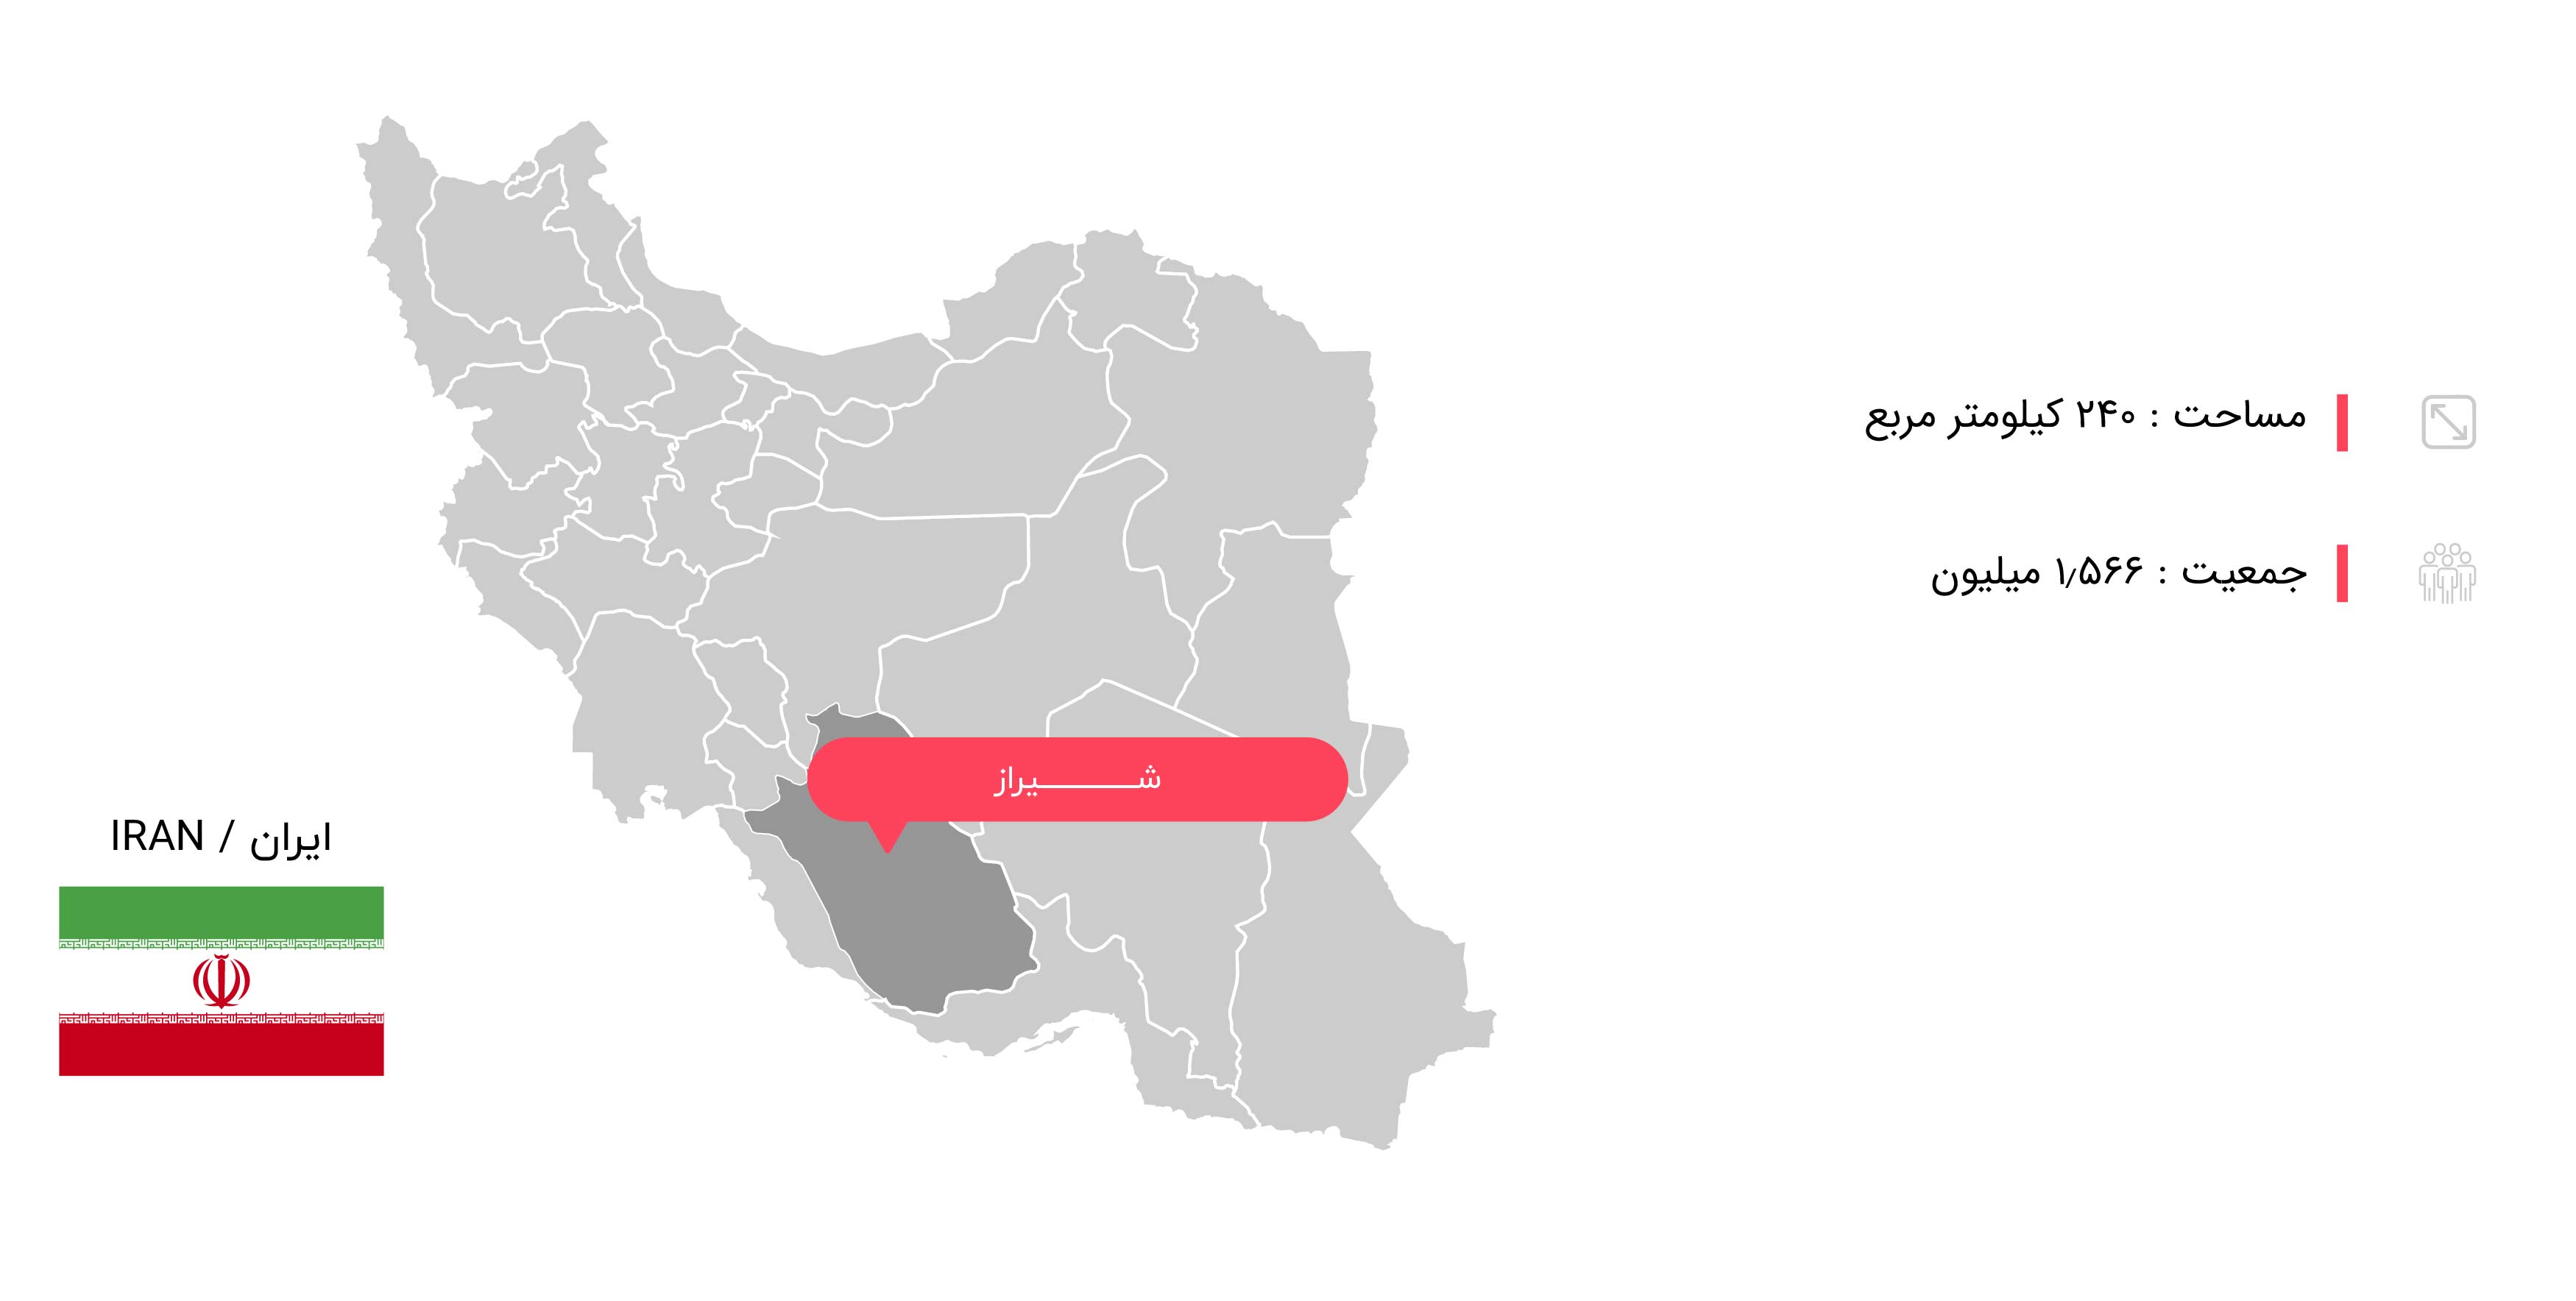  اطلاعات جغرافیایی شیراز